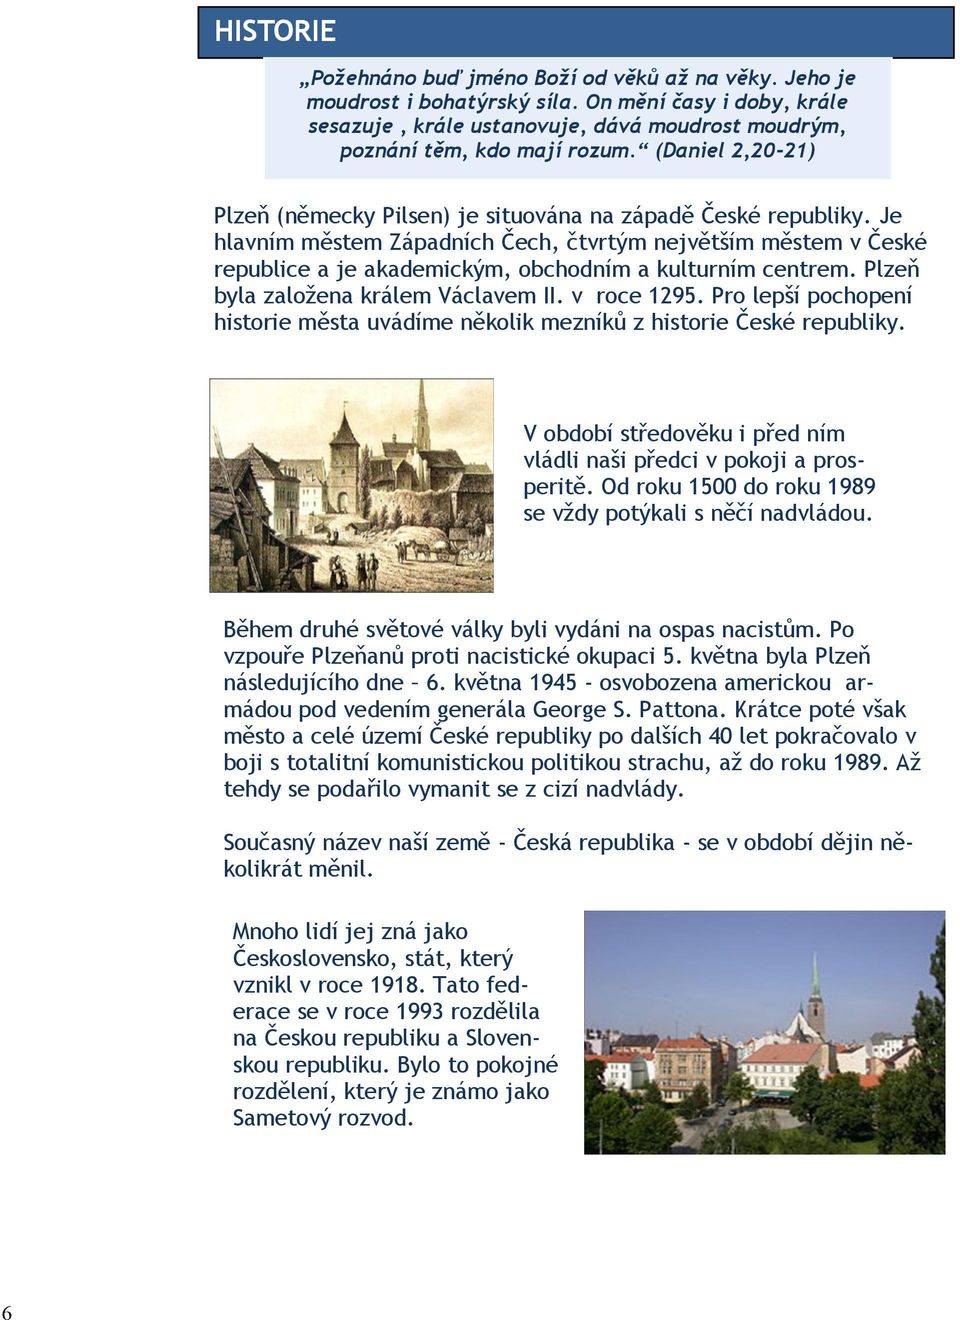 Je hlavním městem Západních Čech, čtvrtým největším městem v České republice a je akademickým, obchodním a kulturním centrem. Plzeň byla zaloţena králem Václavem II. v roce 1295.